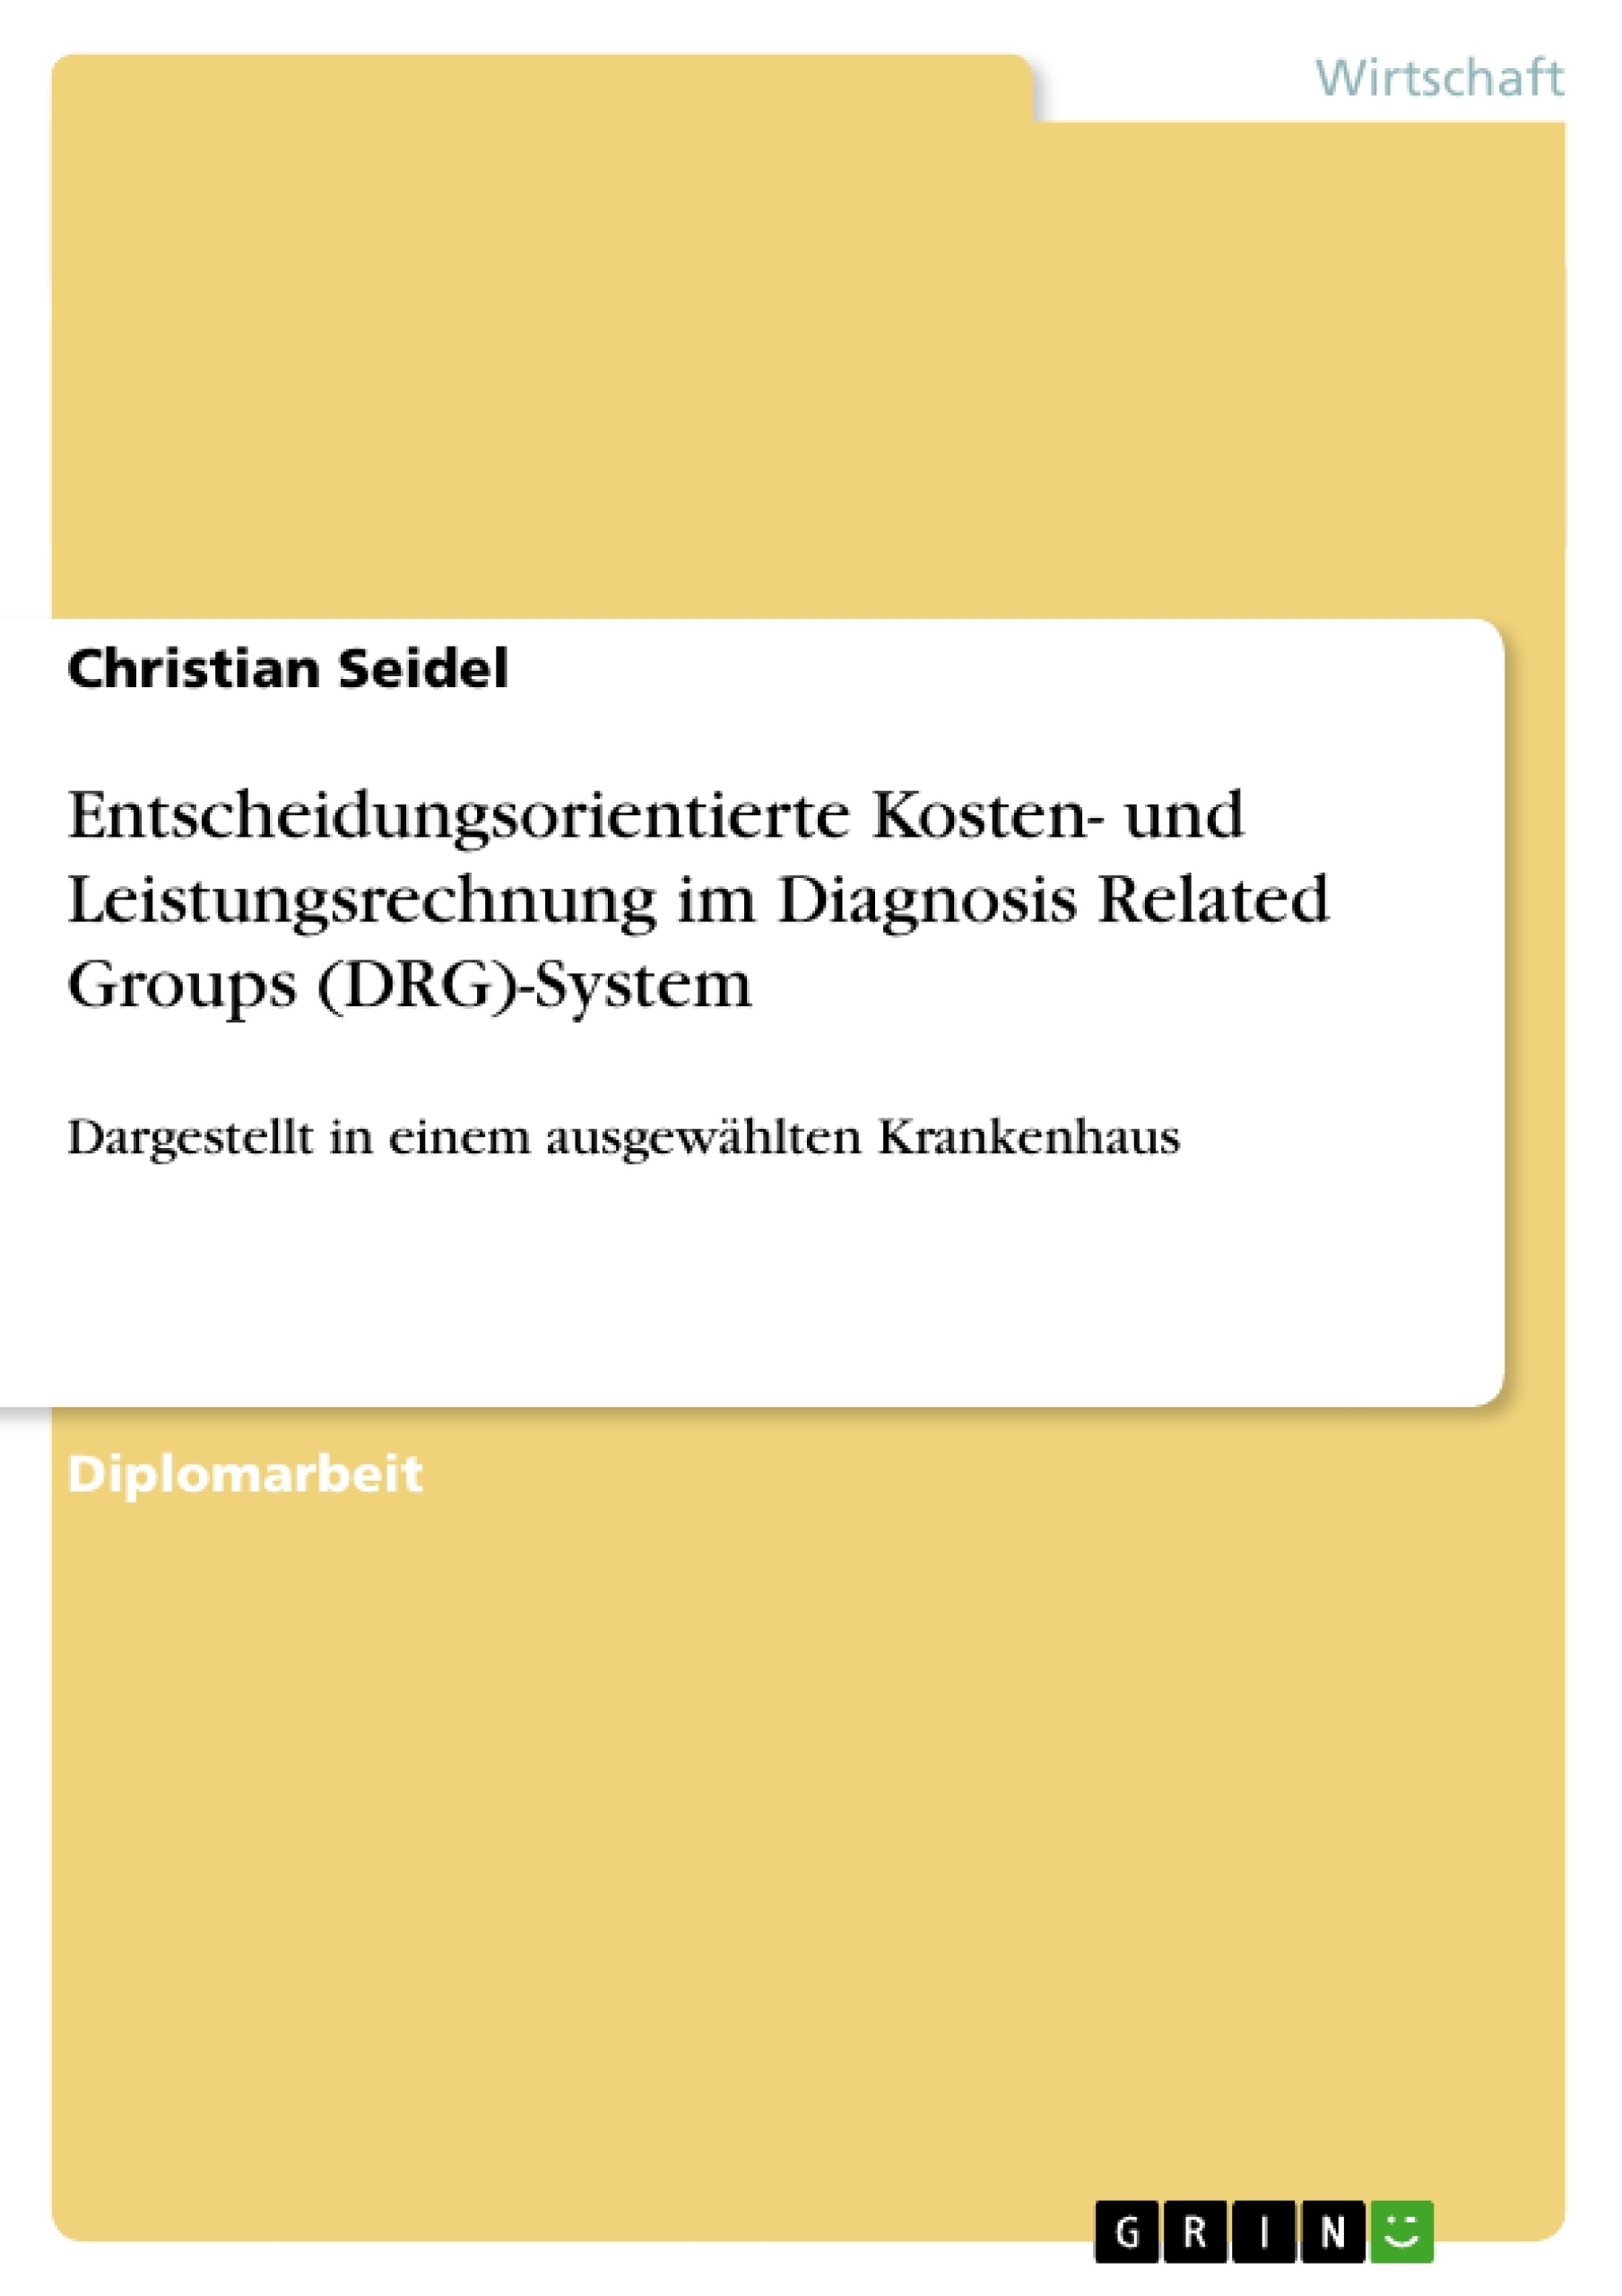 Título: Entscheidungsorientierte Kosten- und Leistungsrechnung im Diagnosis Related Groups (DRG)-System